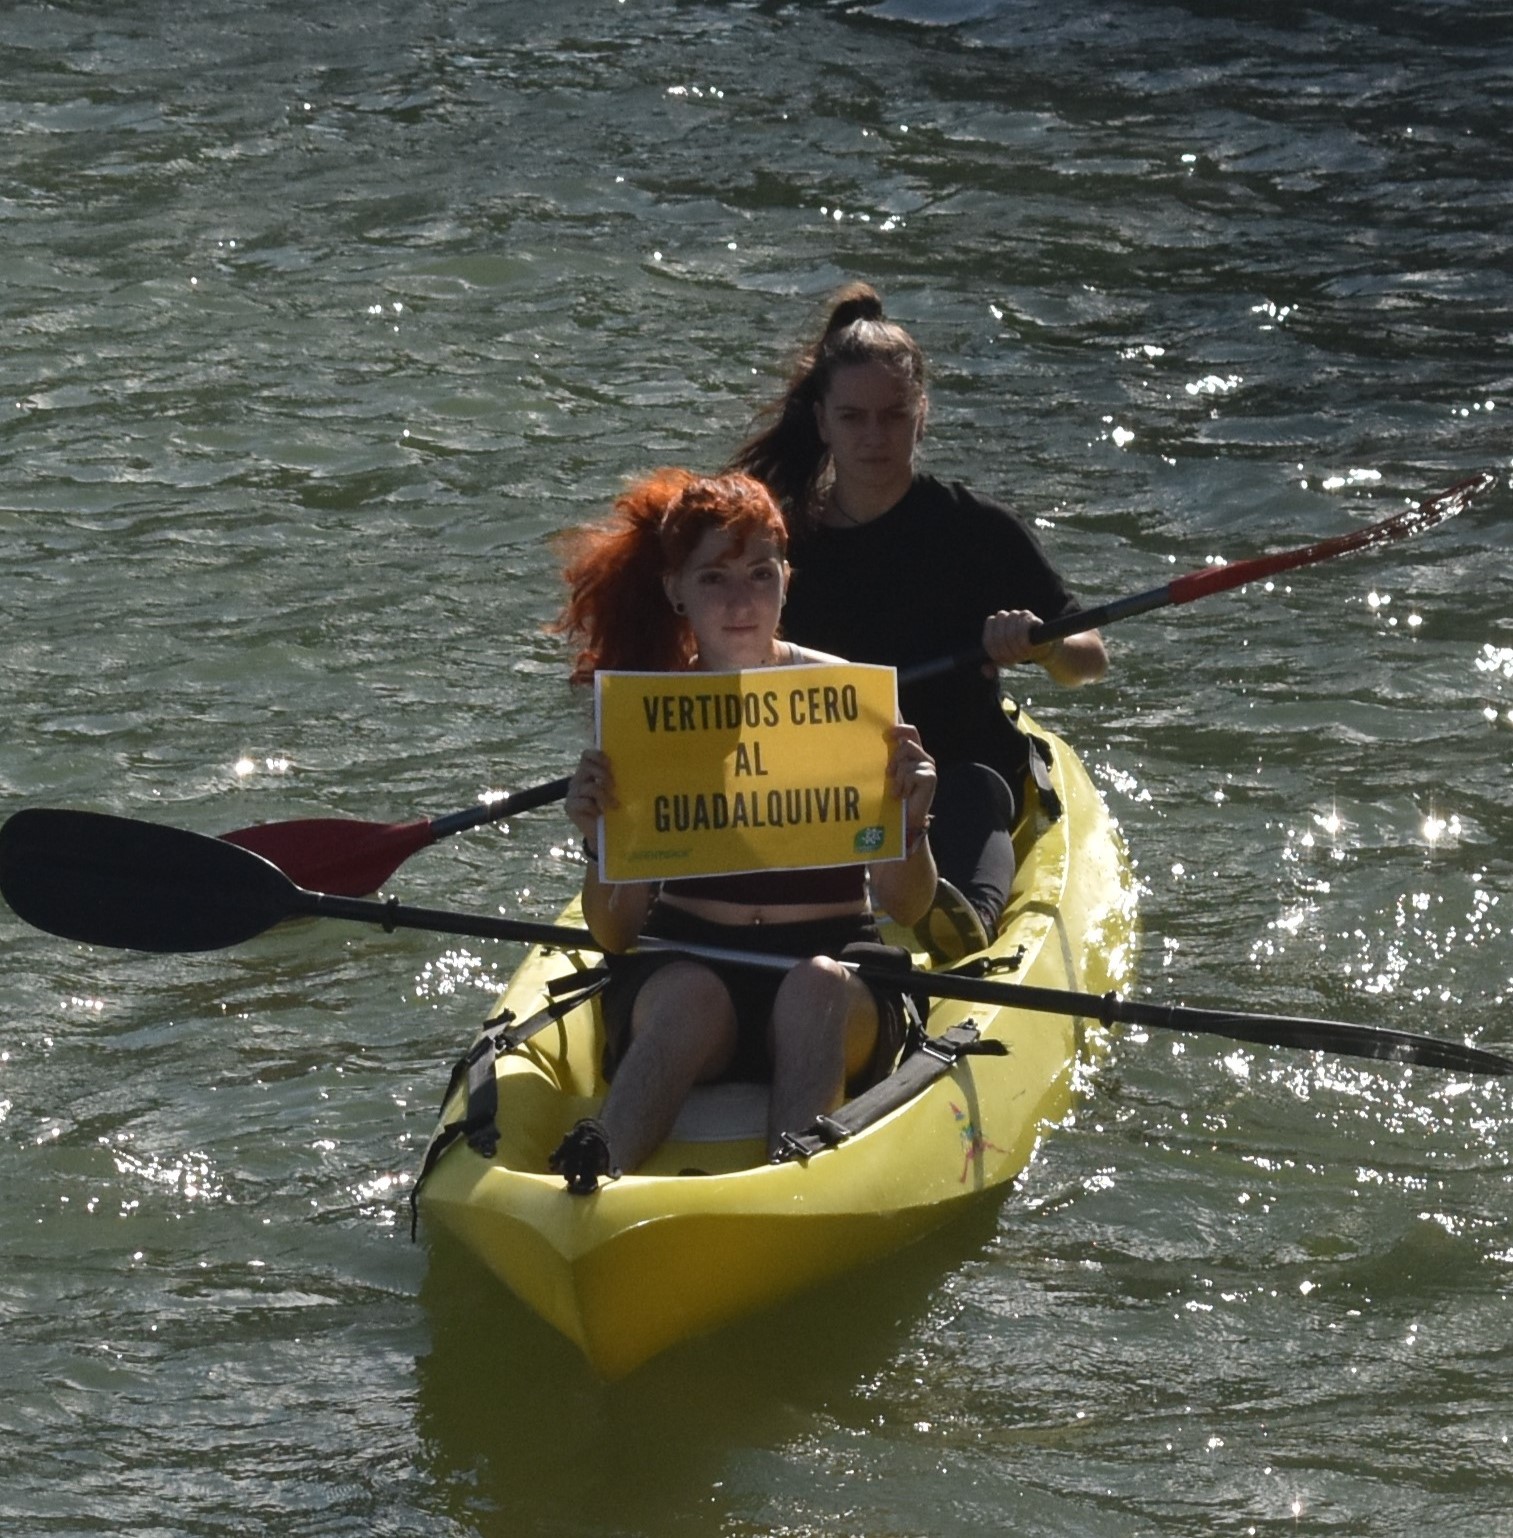 Dos chicas en barca portan el lema "No vertidos al Guadalquivir"